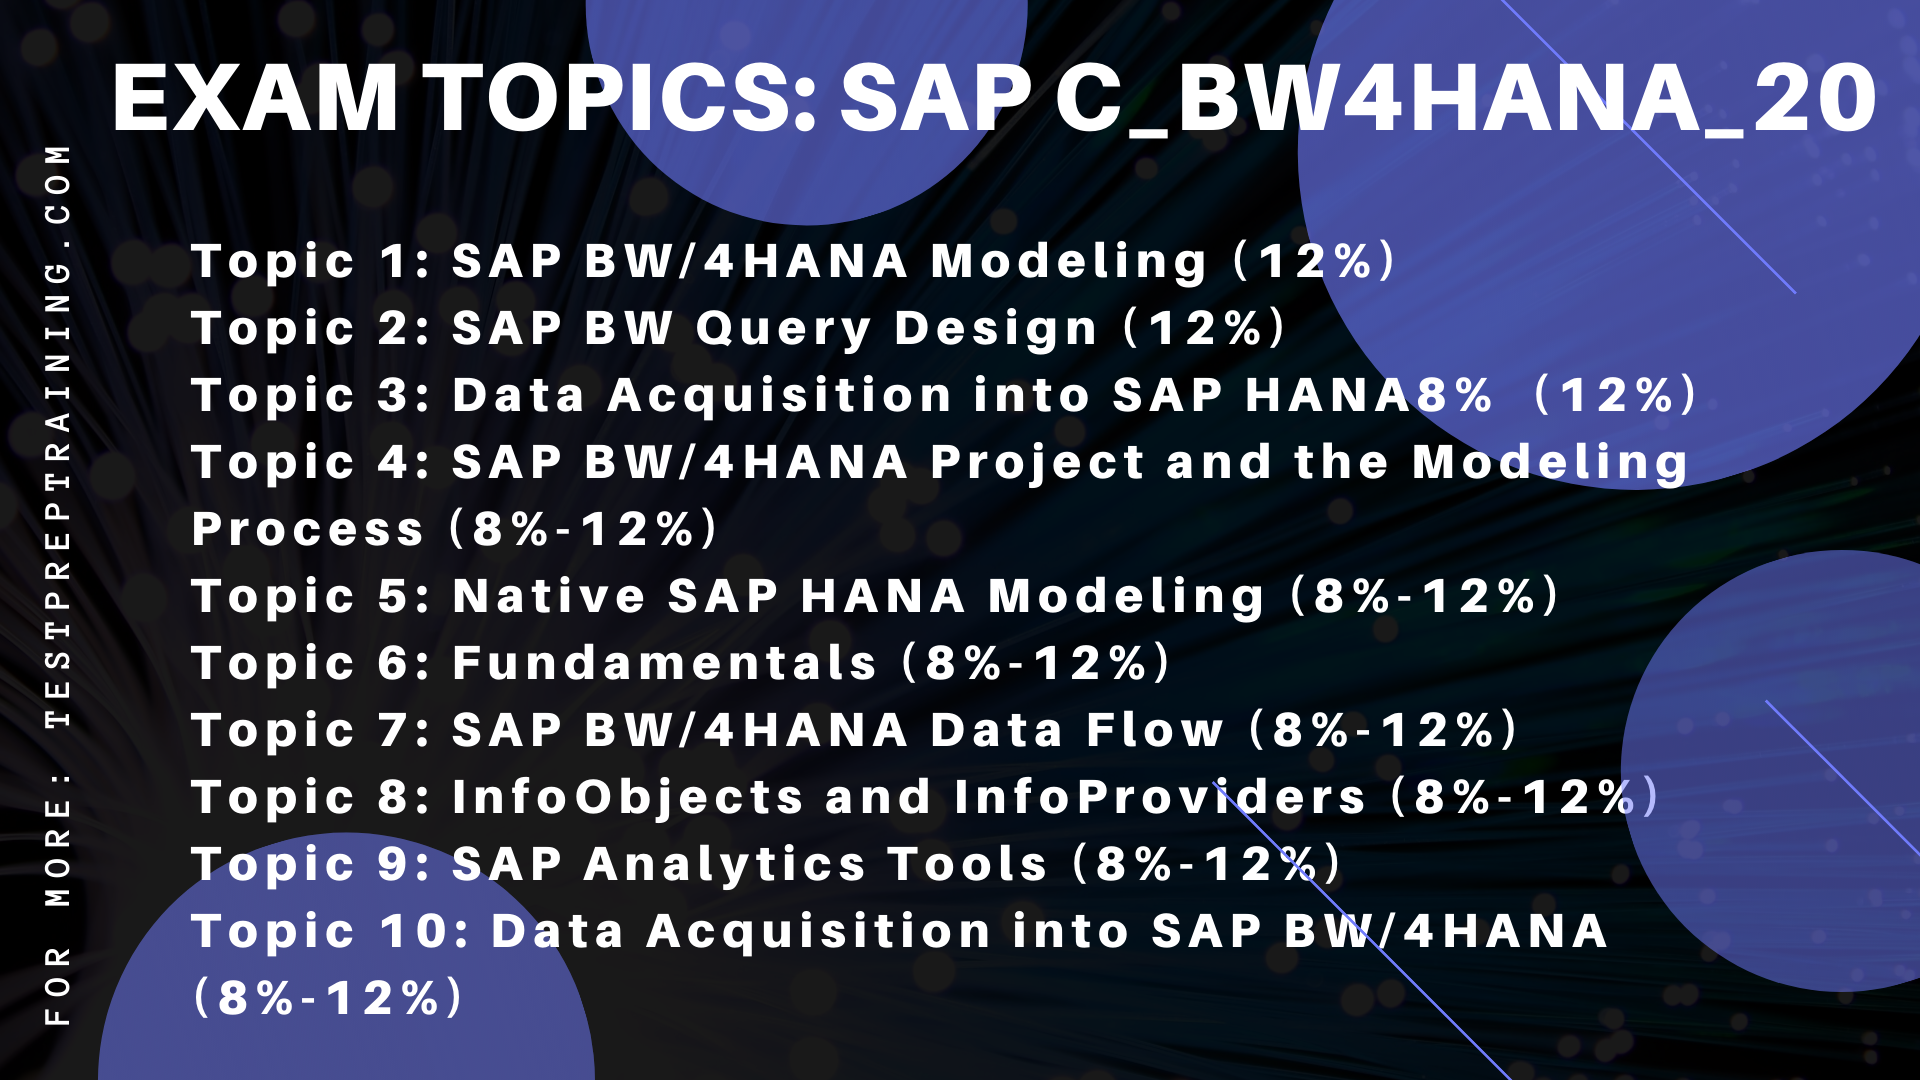  SAP C_BW4HANA_20 topic areas